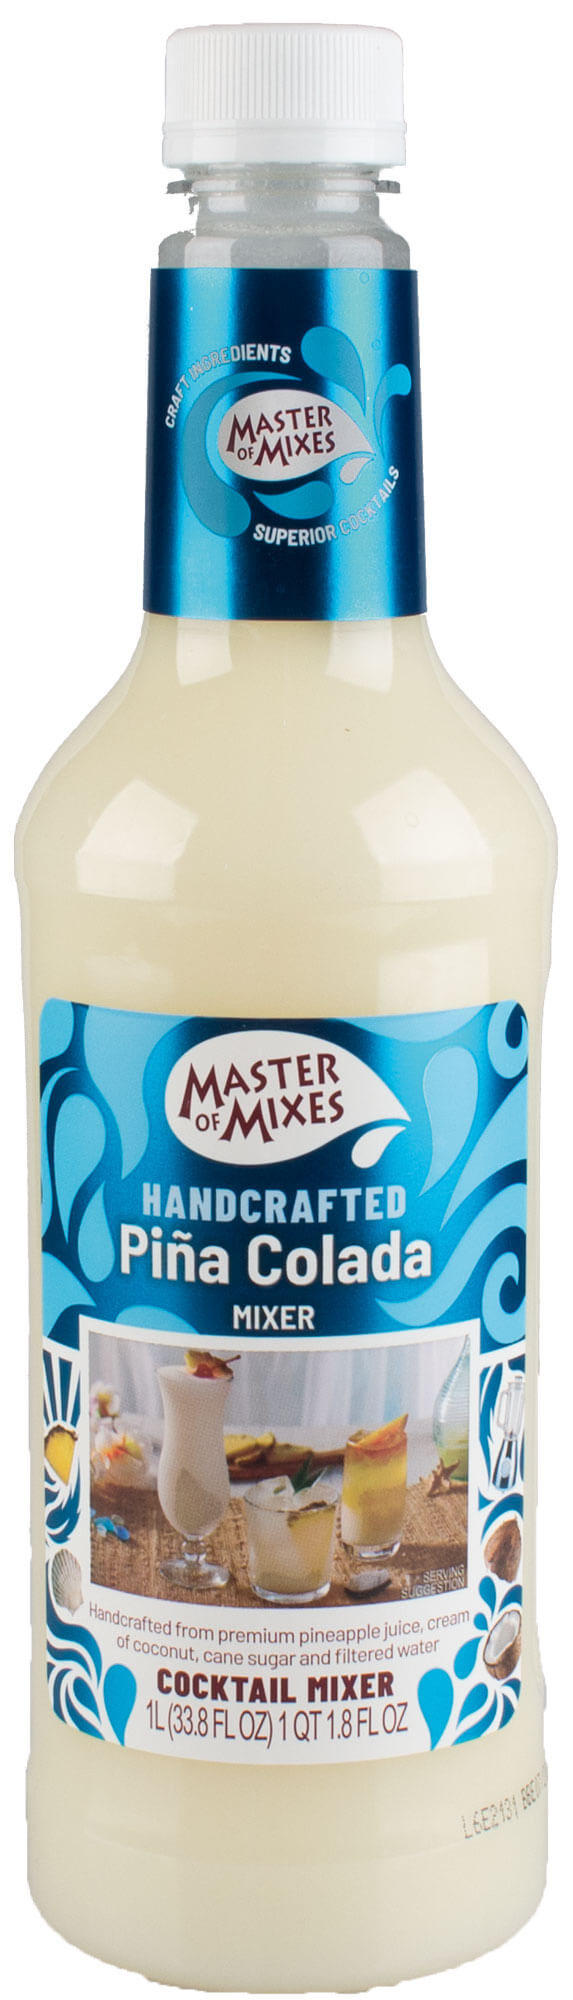 Piña Colada Mix, Master of Mixes - 1,0l